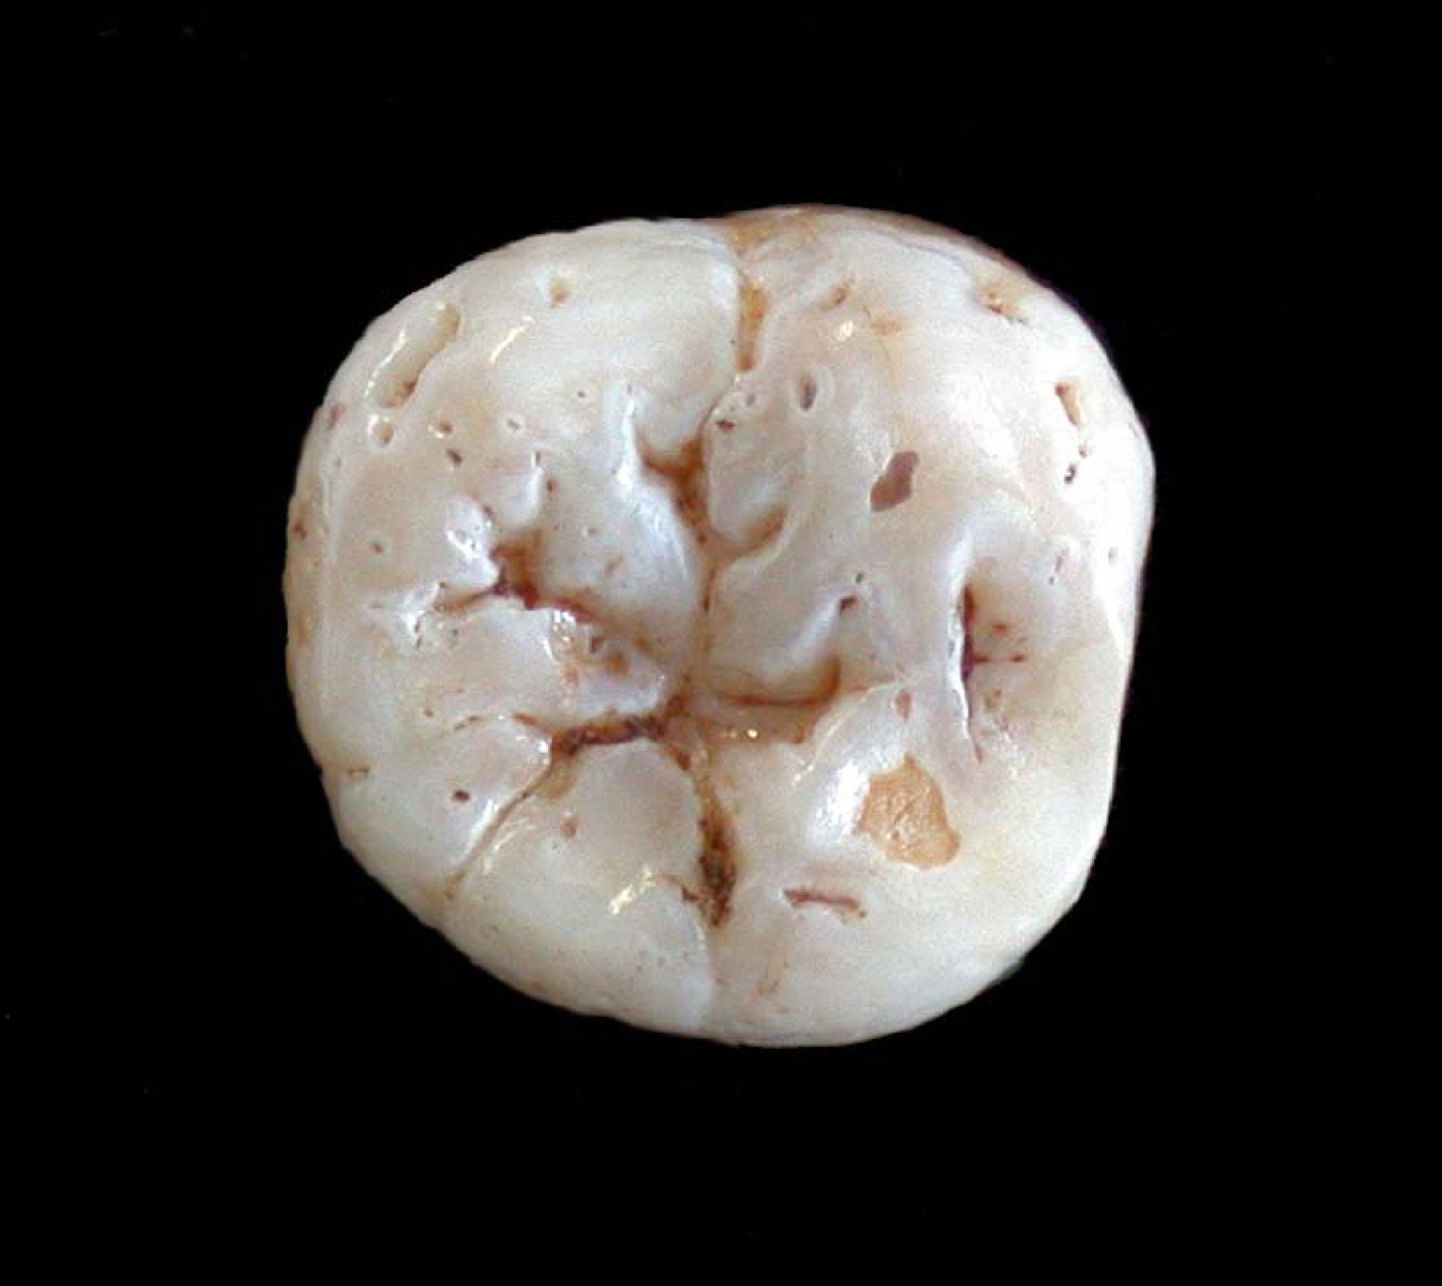 40 000 aasta tagasi elanud neandertallasele kuulunud hamba uurimine kinnitas, et need esiajaloolised inimesed polnud paiksed